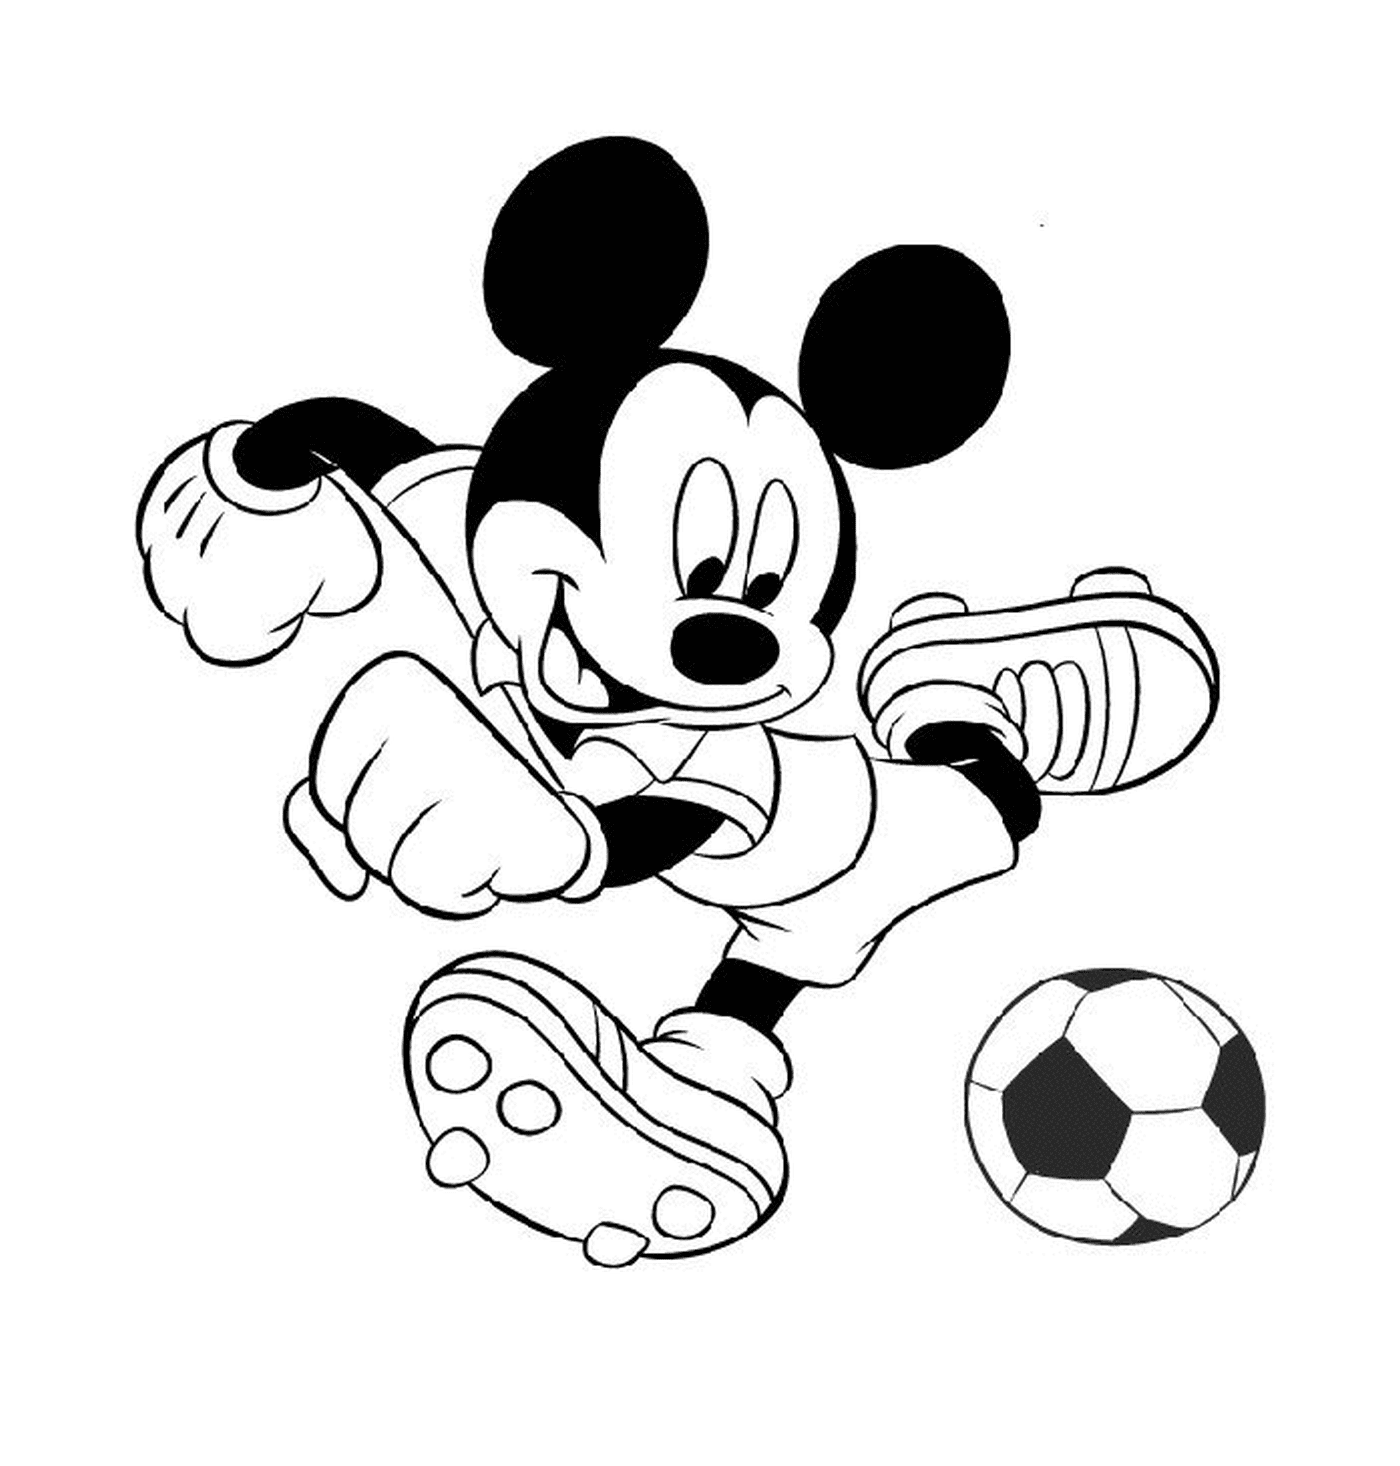  Mickey spielt Fußball: Fußball kicken 